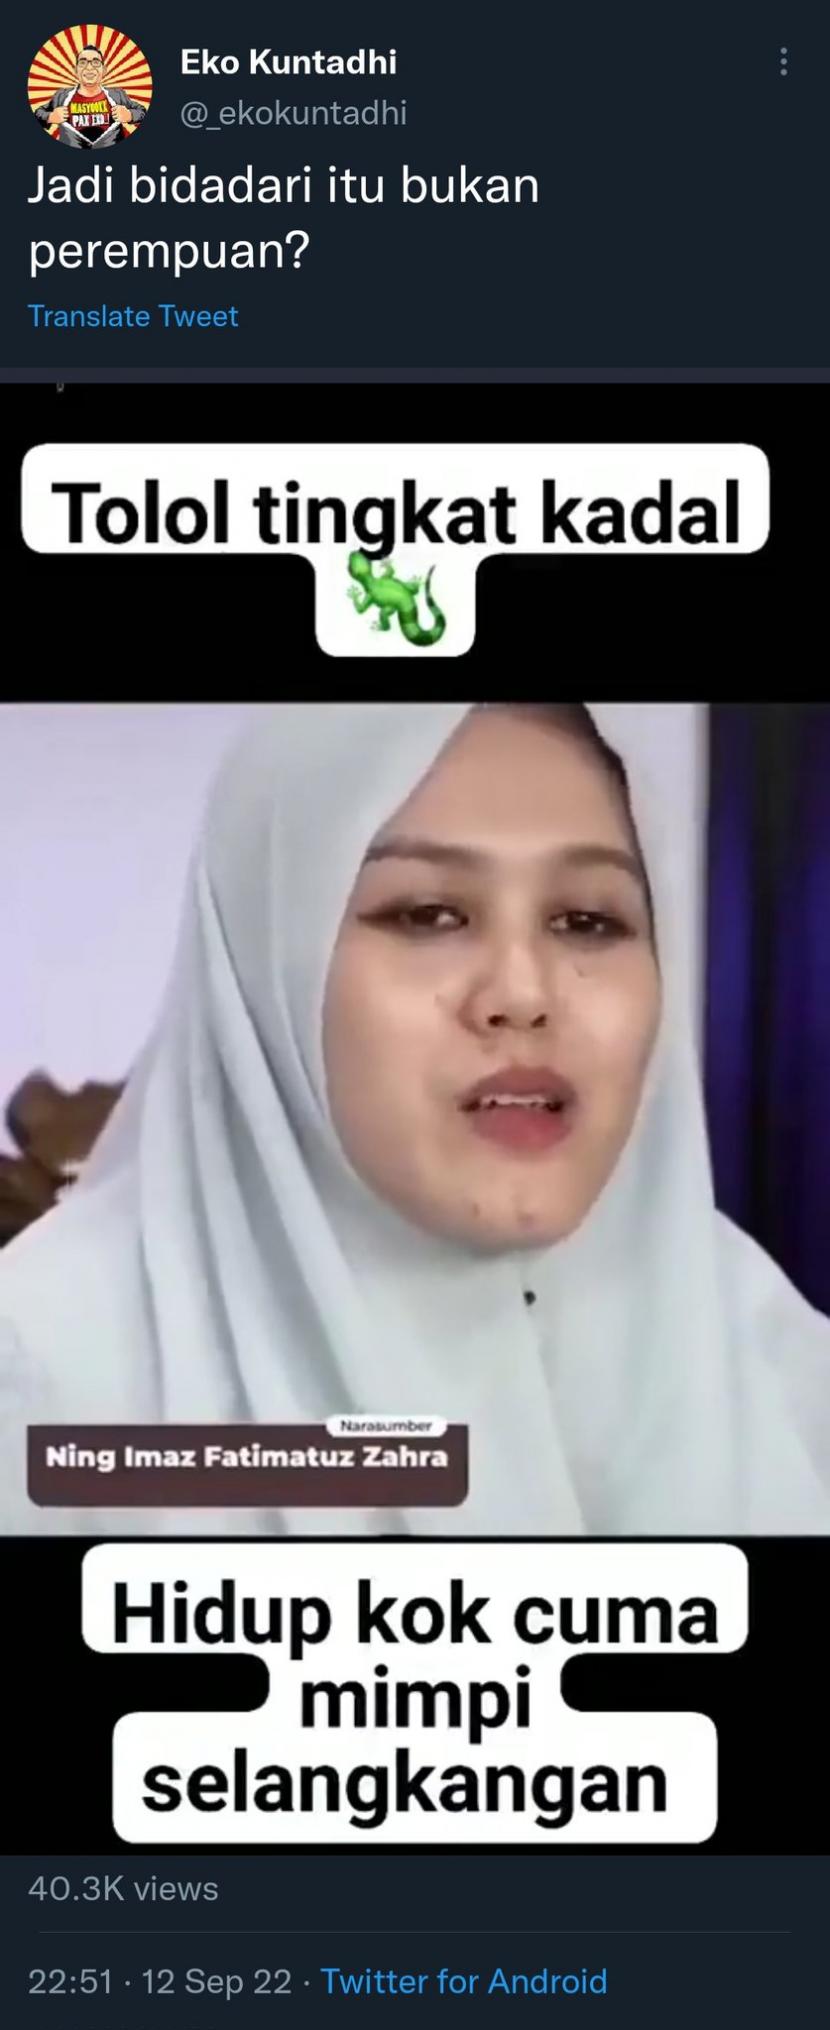 Ustadzah Ponpes Lirboyo, Kota Kediri, Jawa Timur, Ustadzah Imaz Fatimatuz Zahra menjadi korban penghinaan dan pelecehan di lini masa Twitter.